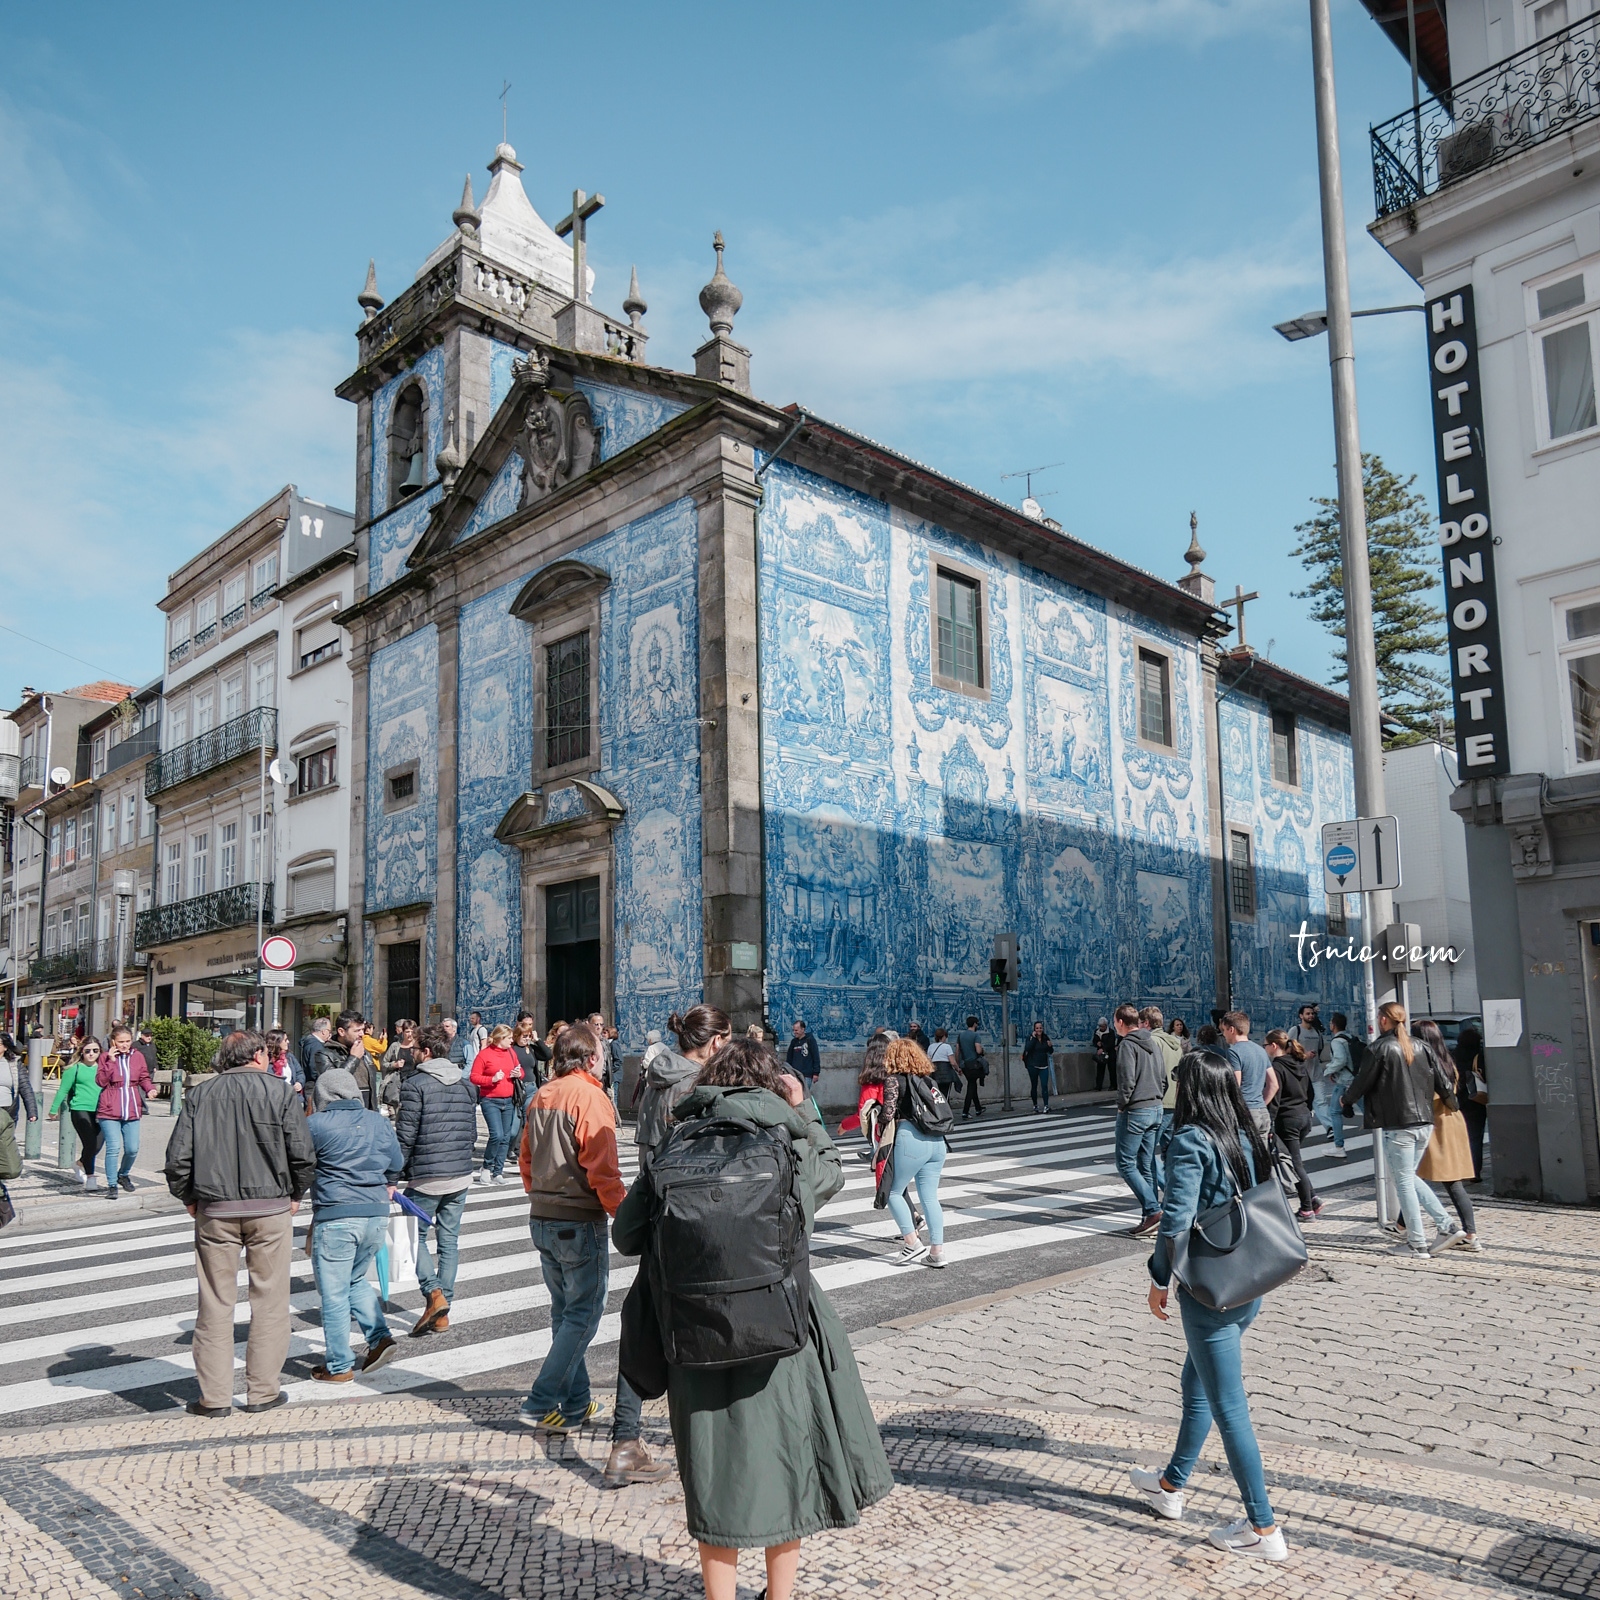 葡萄牙波多景點 Capela das Almas 阿瑪斯教堂 18 世紀藍白瓷磚彩繪教堂